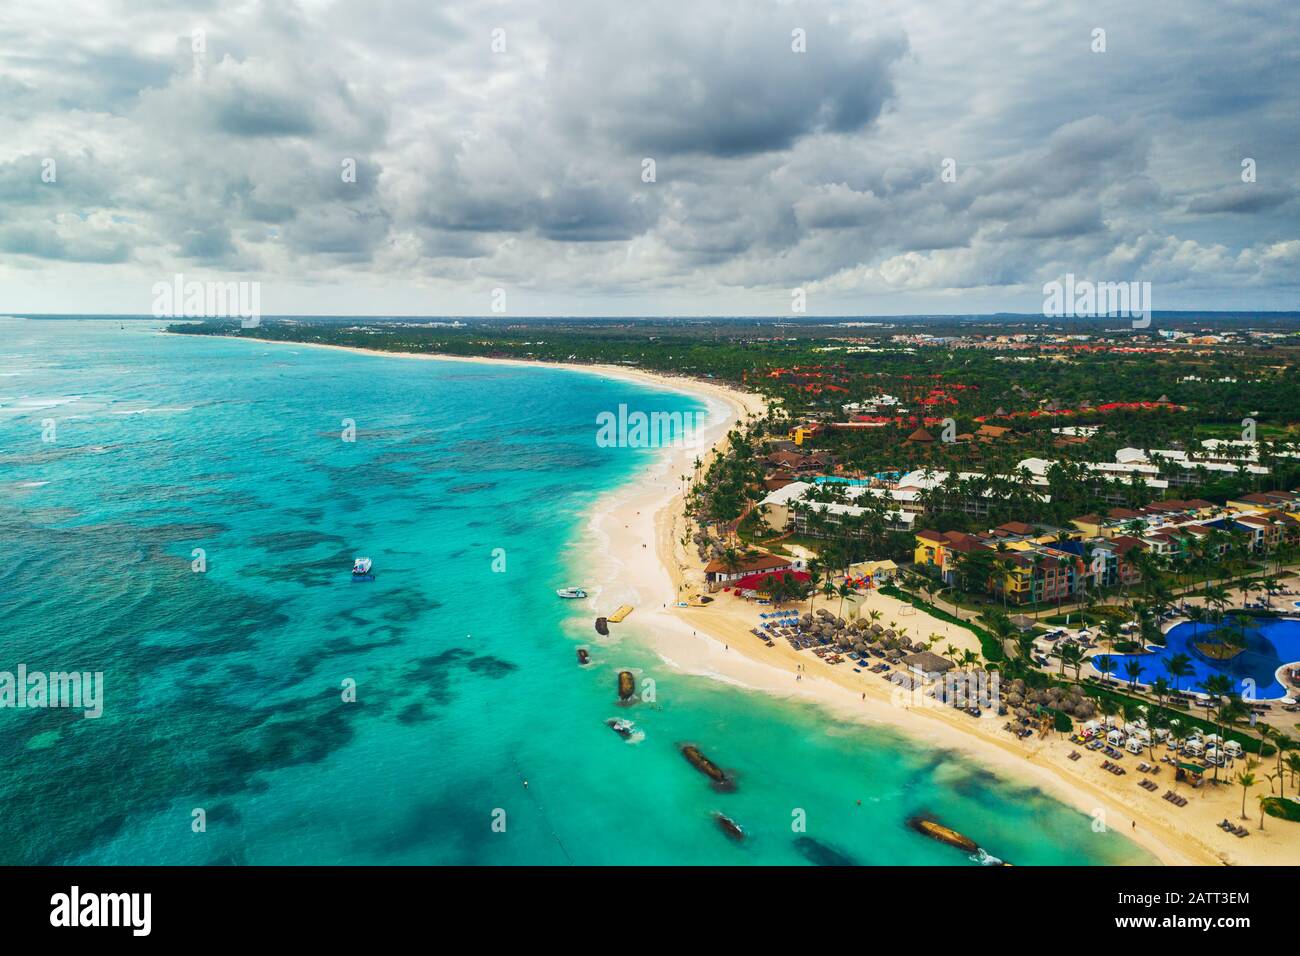 Vista aerea della spiaggia di Punta Cana Resort, Repubblica Dominicana. Vacanze estive con il paracadute ascensionale, immersioni, nuoto e prendere il sole. Foto Stock